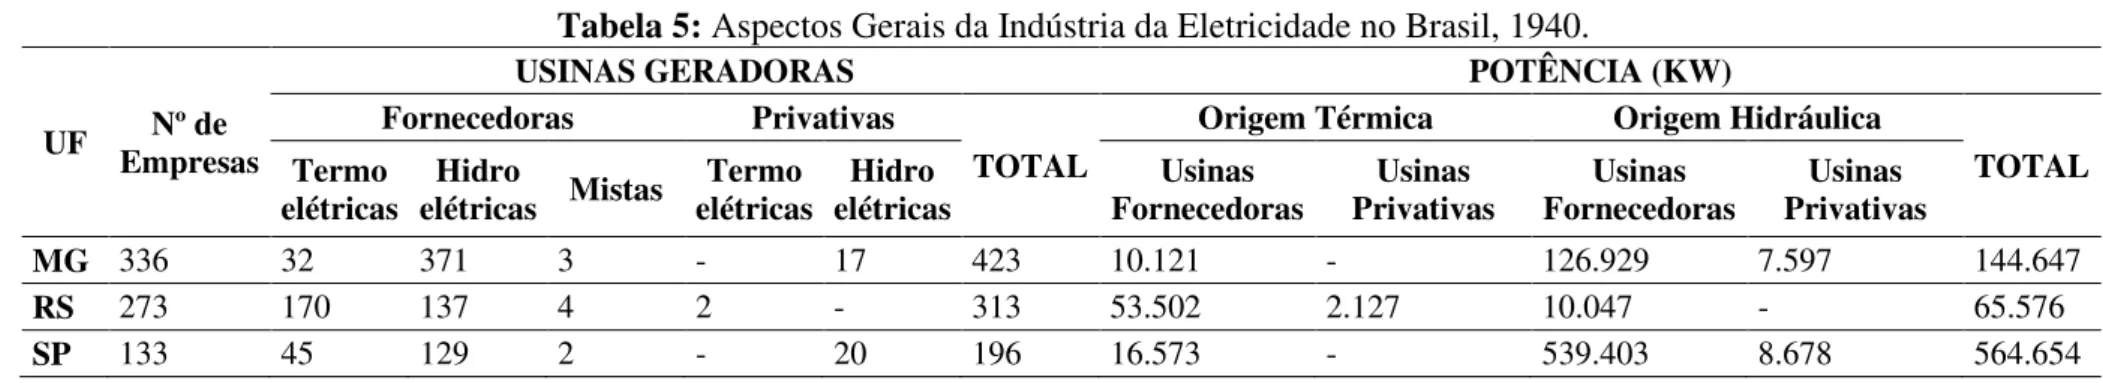 Tabela 5: Aspectos Gerais da Indústria da Eletricidade no Brasil, 1940. 